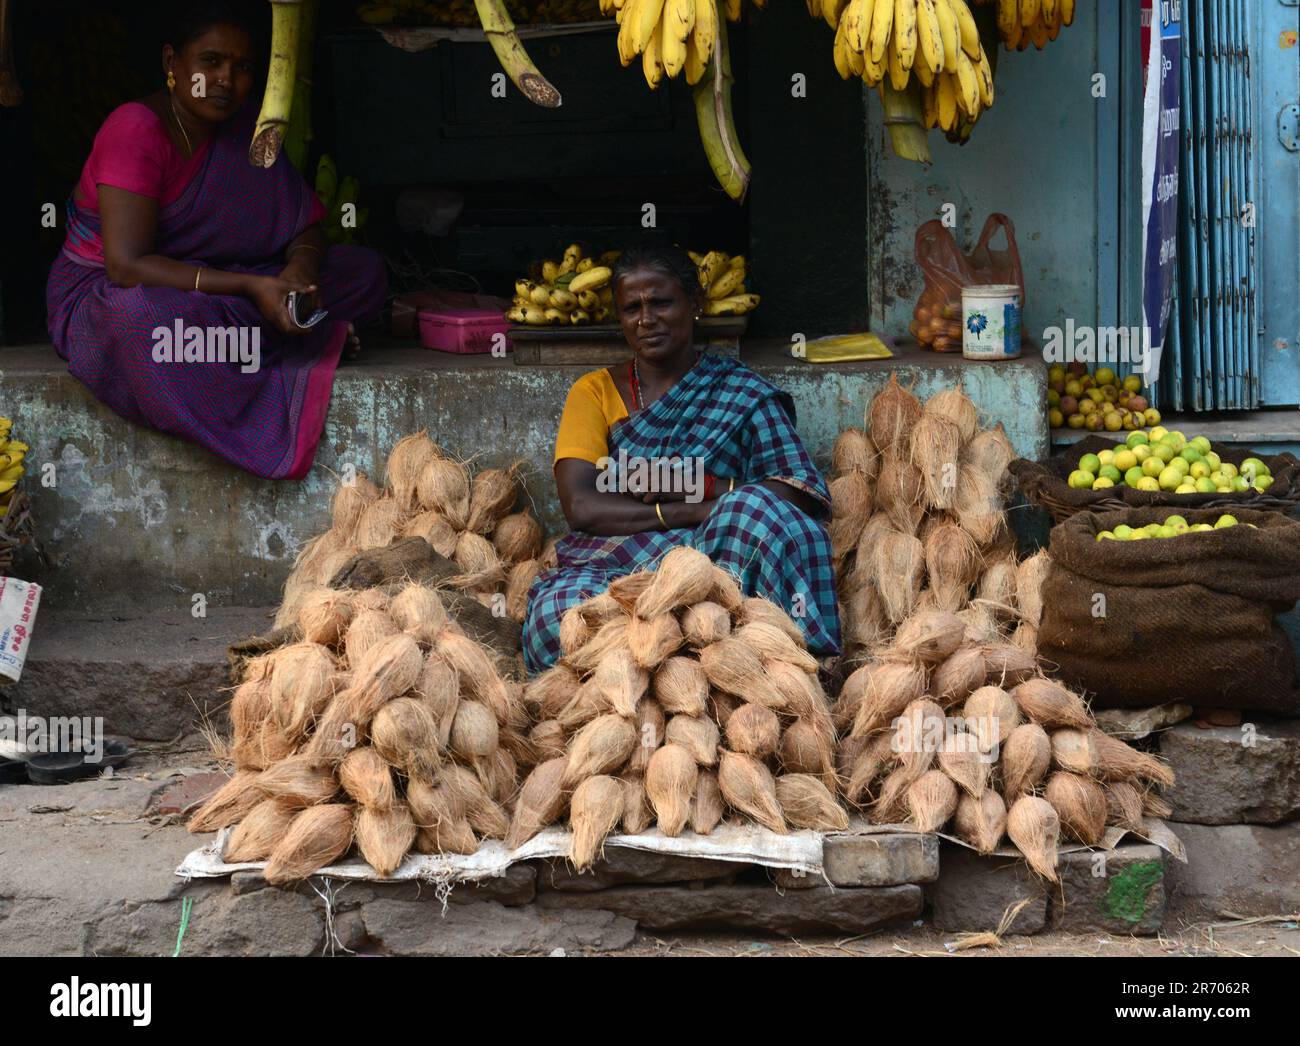 Noci di cocco secche e banane vendute in un negozio al mercato di Madurai, Tamil Nadu, India. Foto Stock